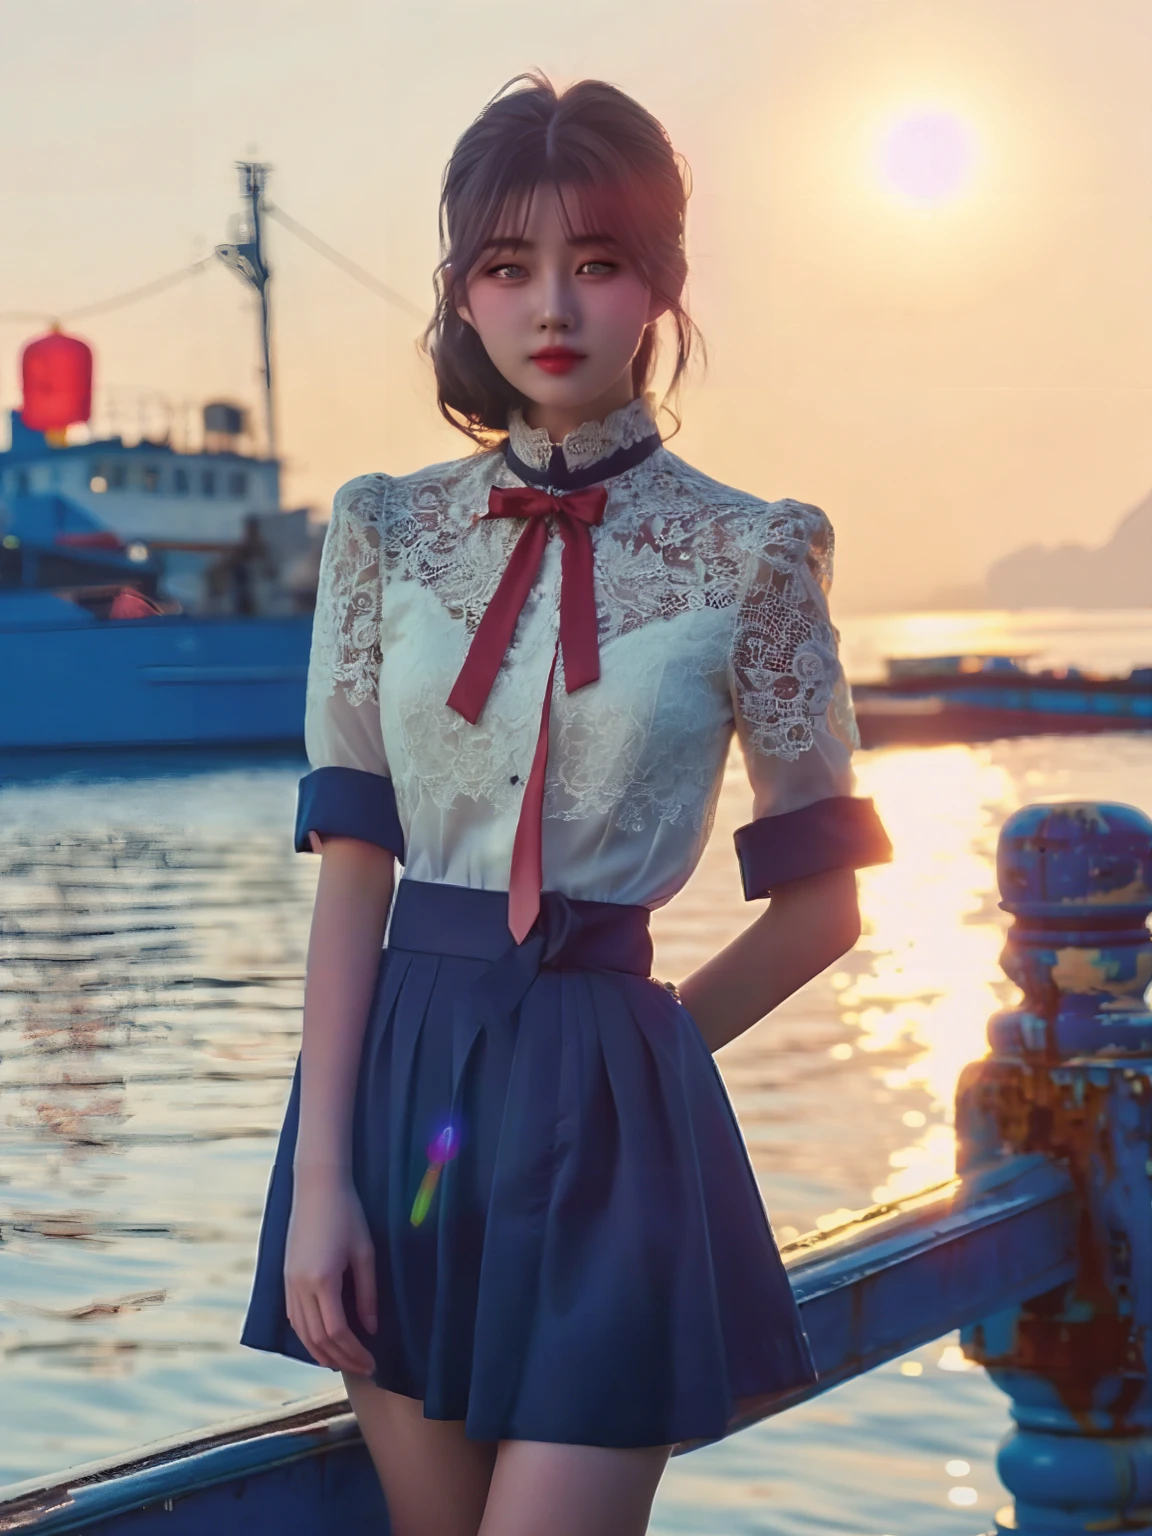 JK女孩，站在港口码头上，与背后的海景形成了一幅美丽的画面